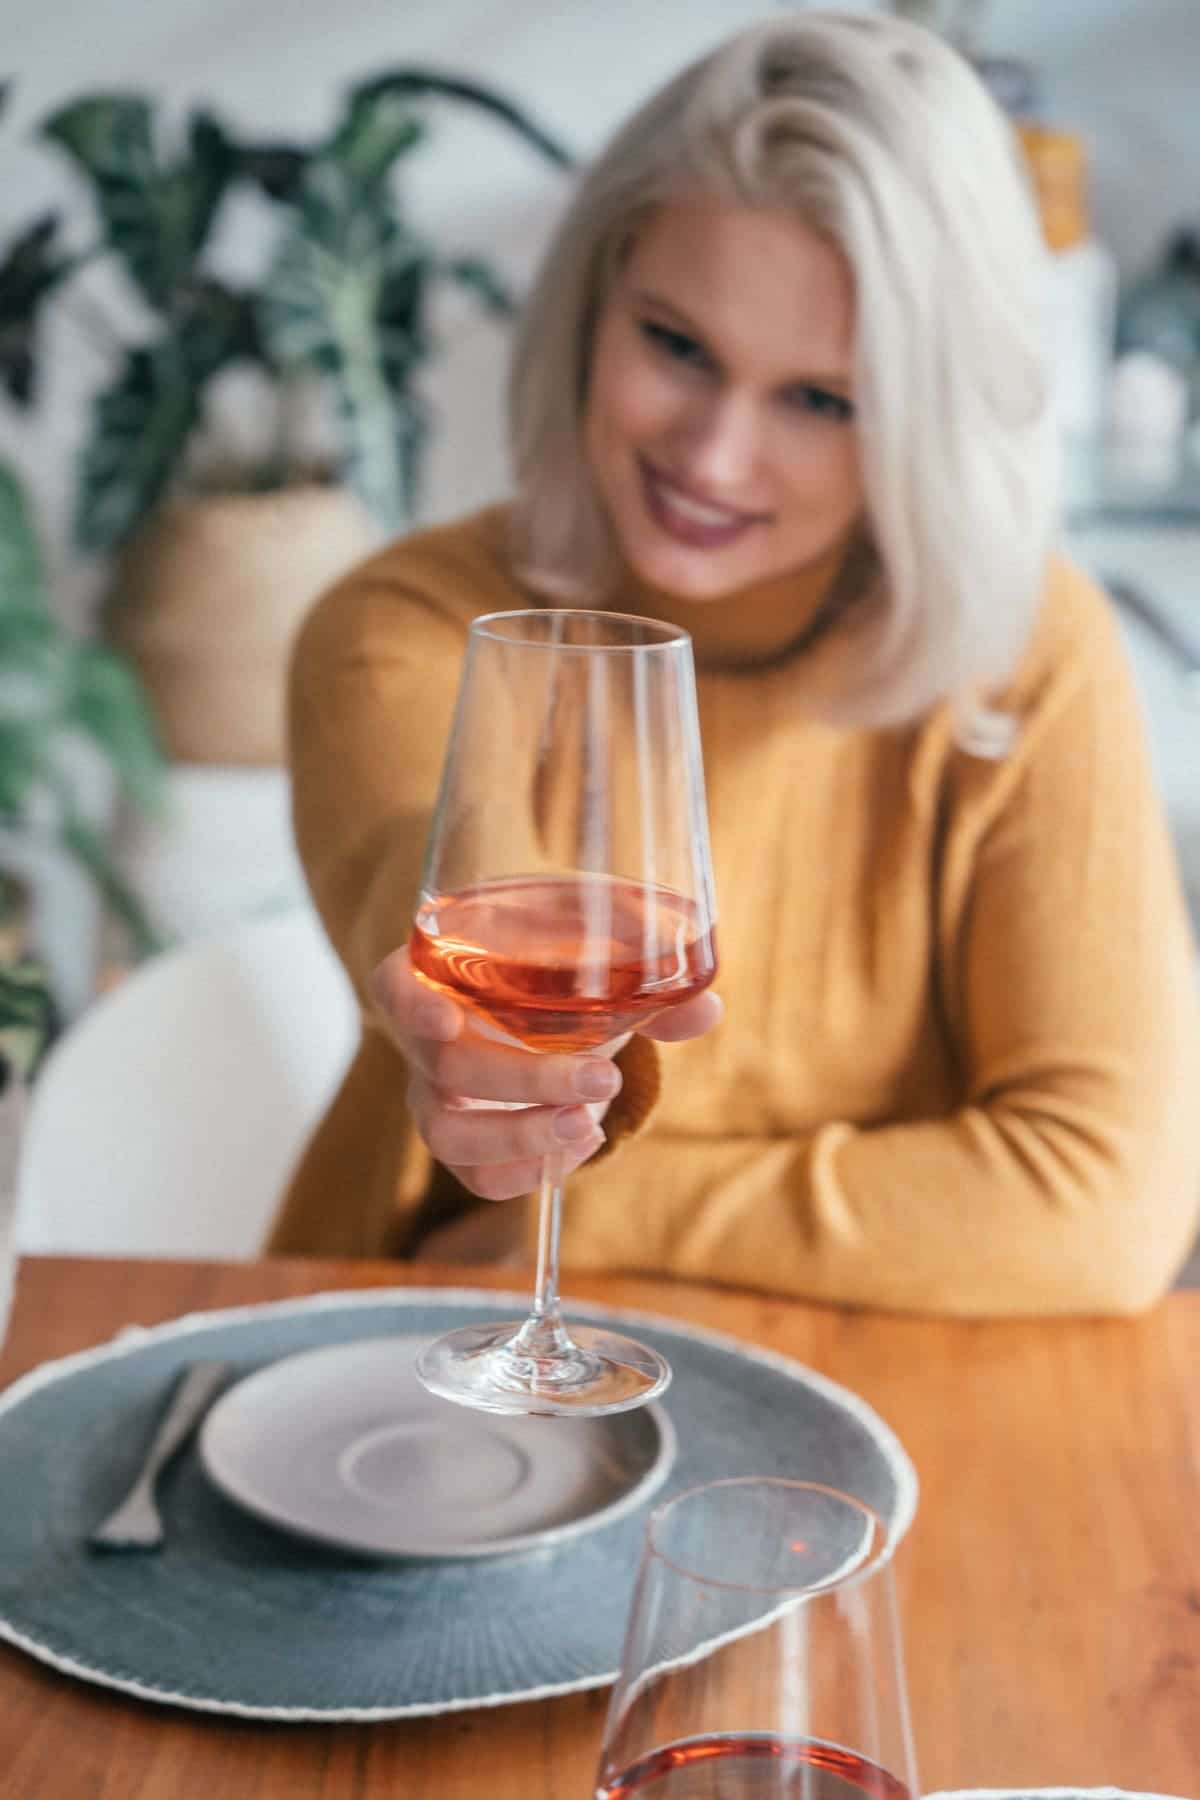 Mein Provence Moment in Deutschland - Ein Rosé Abend mit Freunden